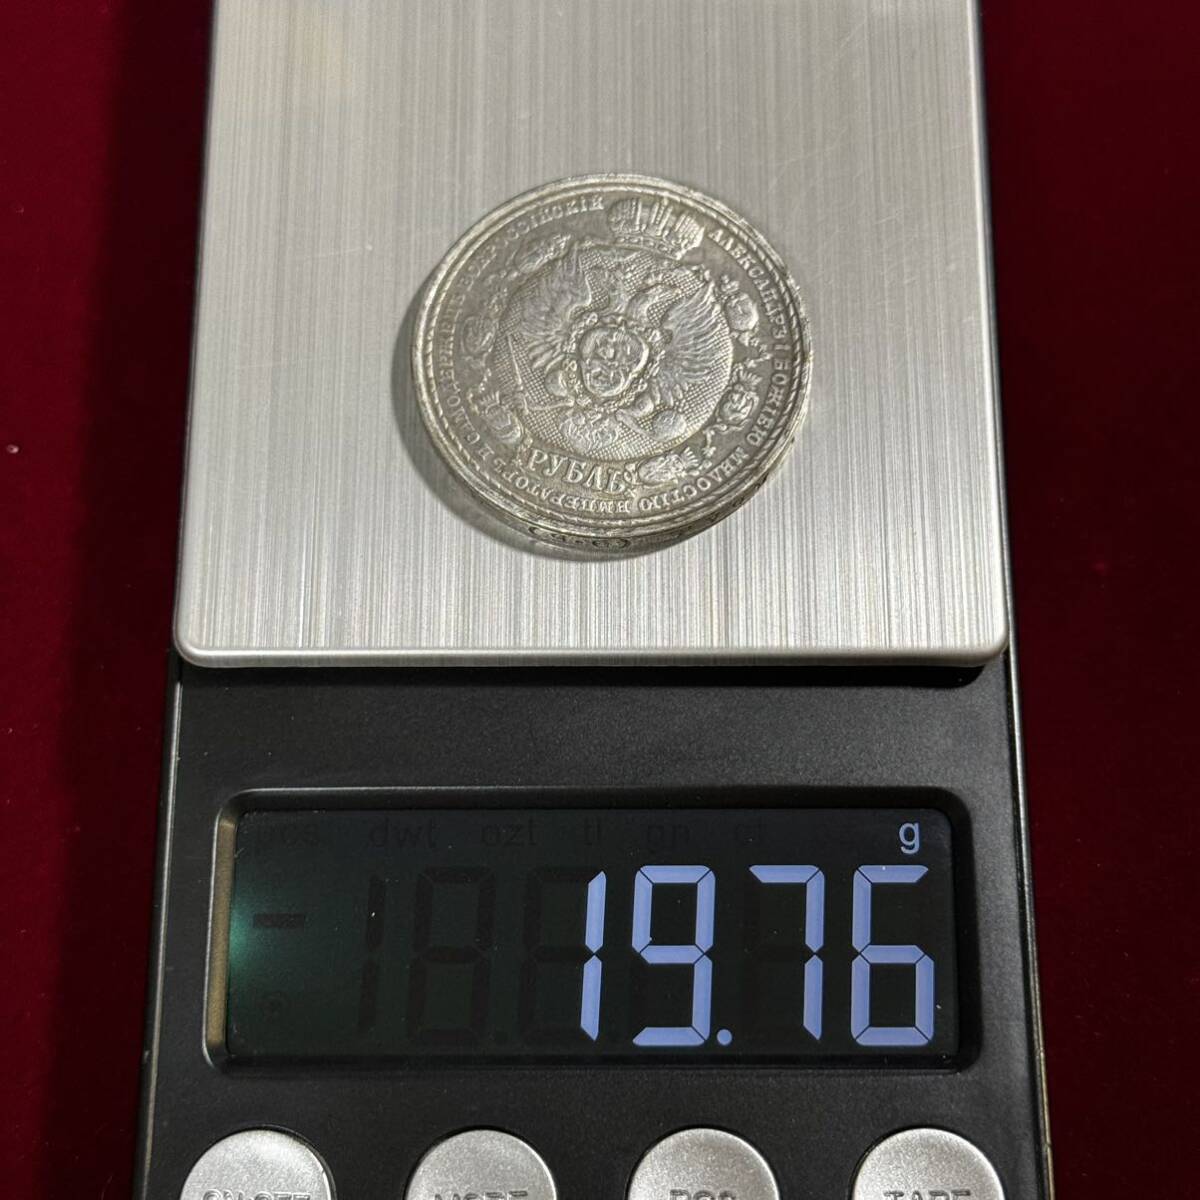 ロシア帝国 硬貨 古銭 1812年の愛国戦争 1912年 フランス帝国侵攻 100周年記念 国章 ルーブル コイン 銀貨 外国古銭 海外硬貨の画像6